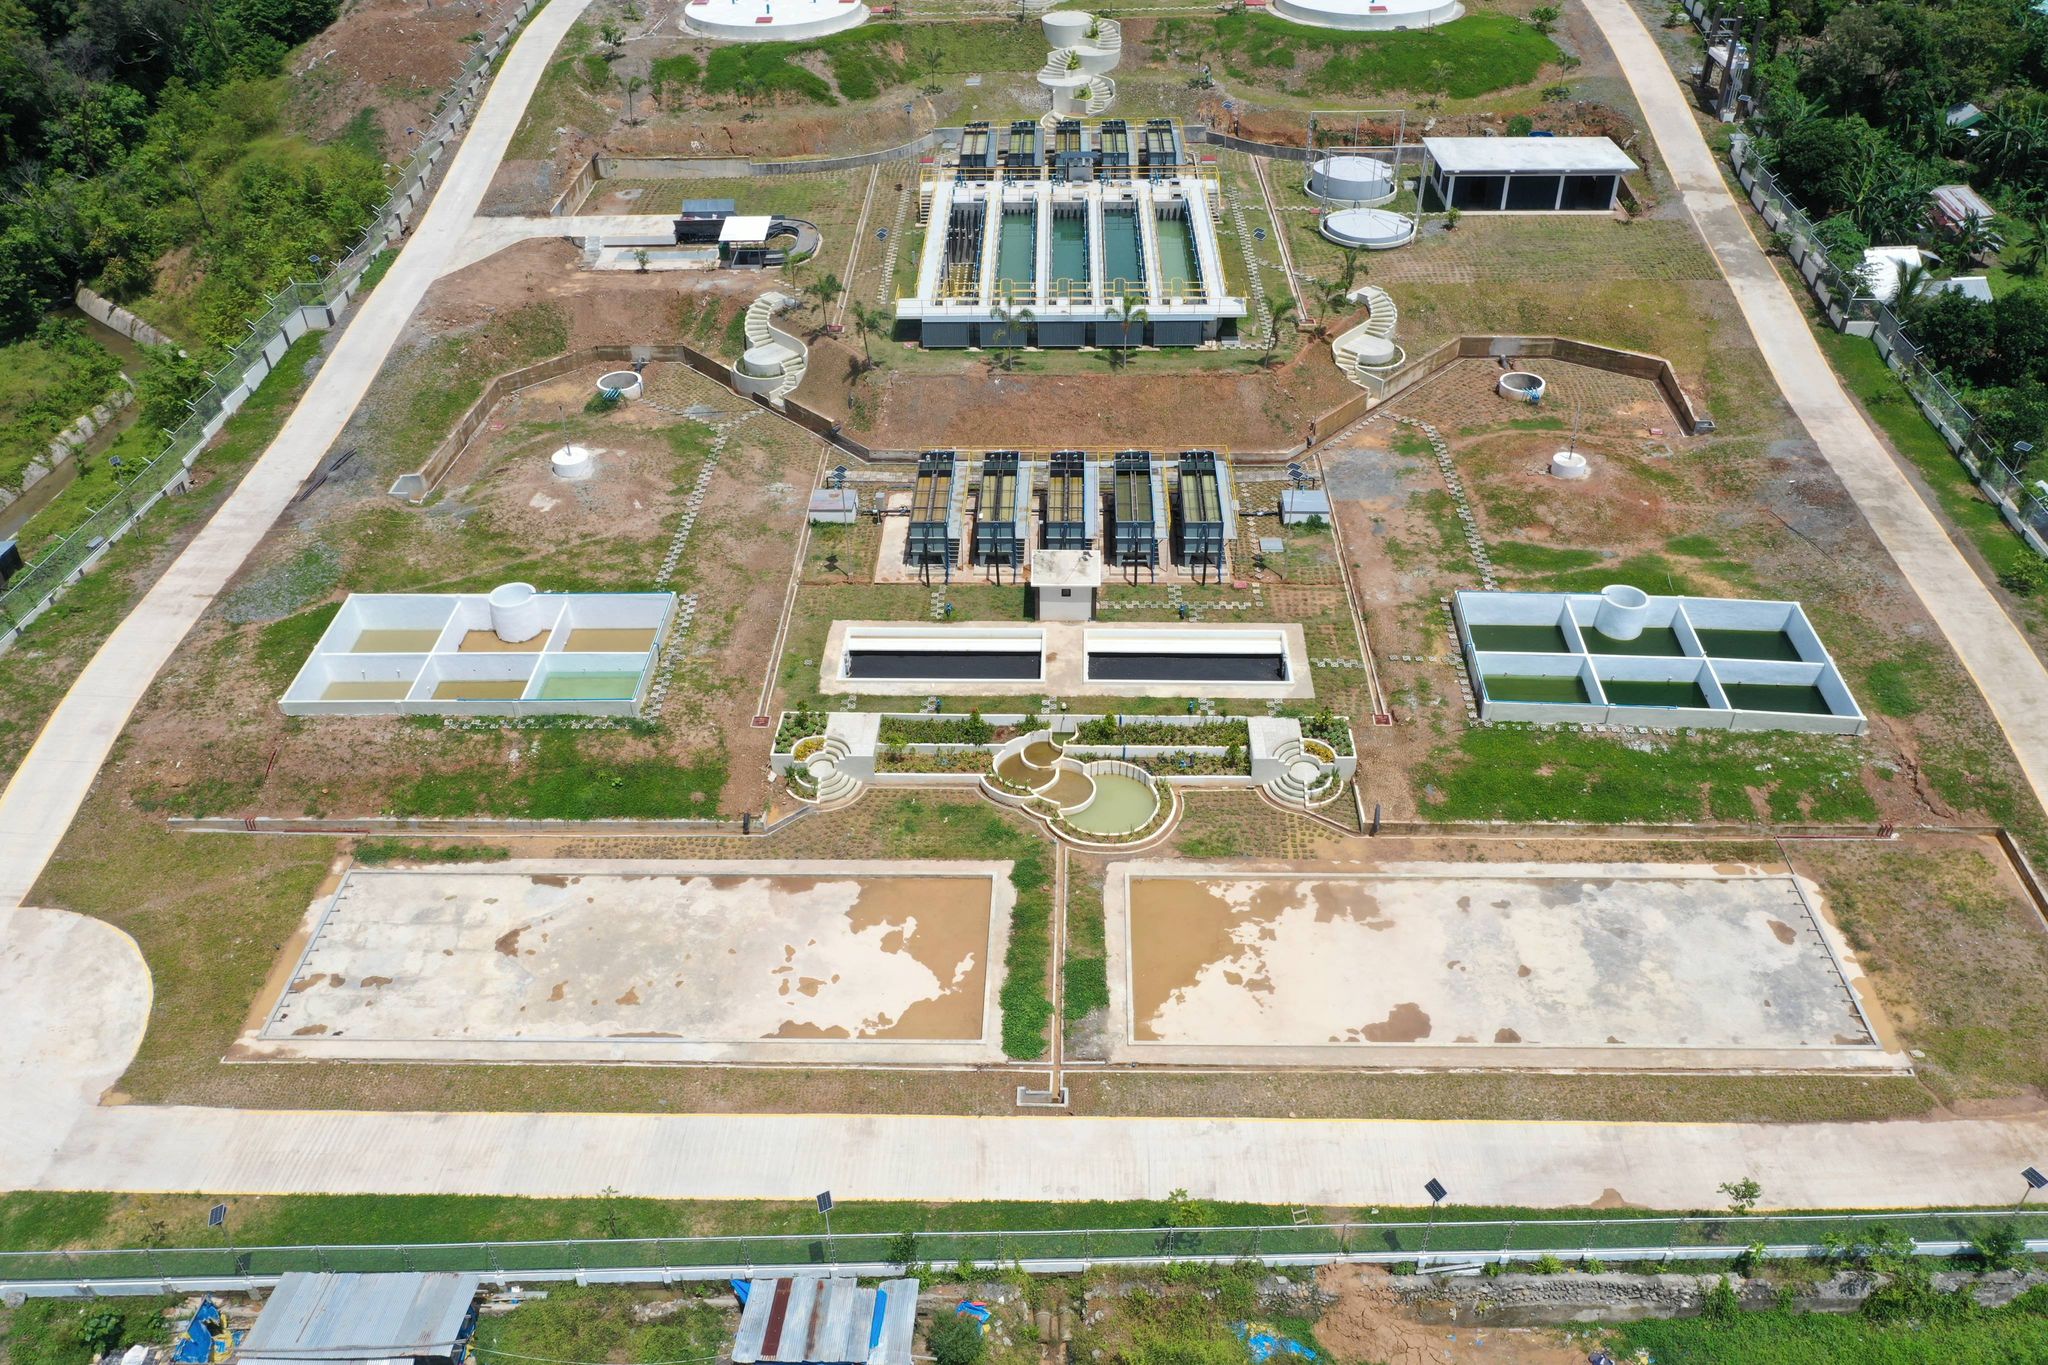 Proyekto sa water treatment plant sa Pilipinas